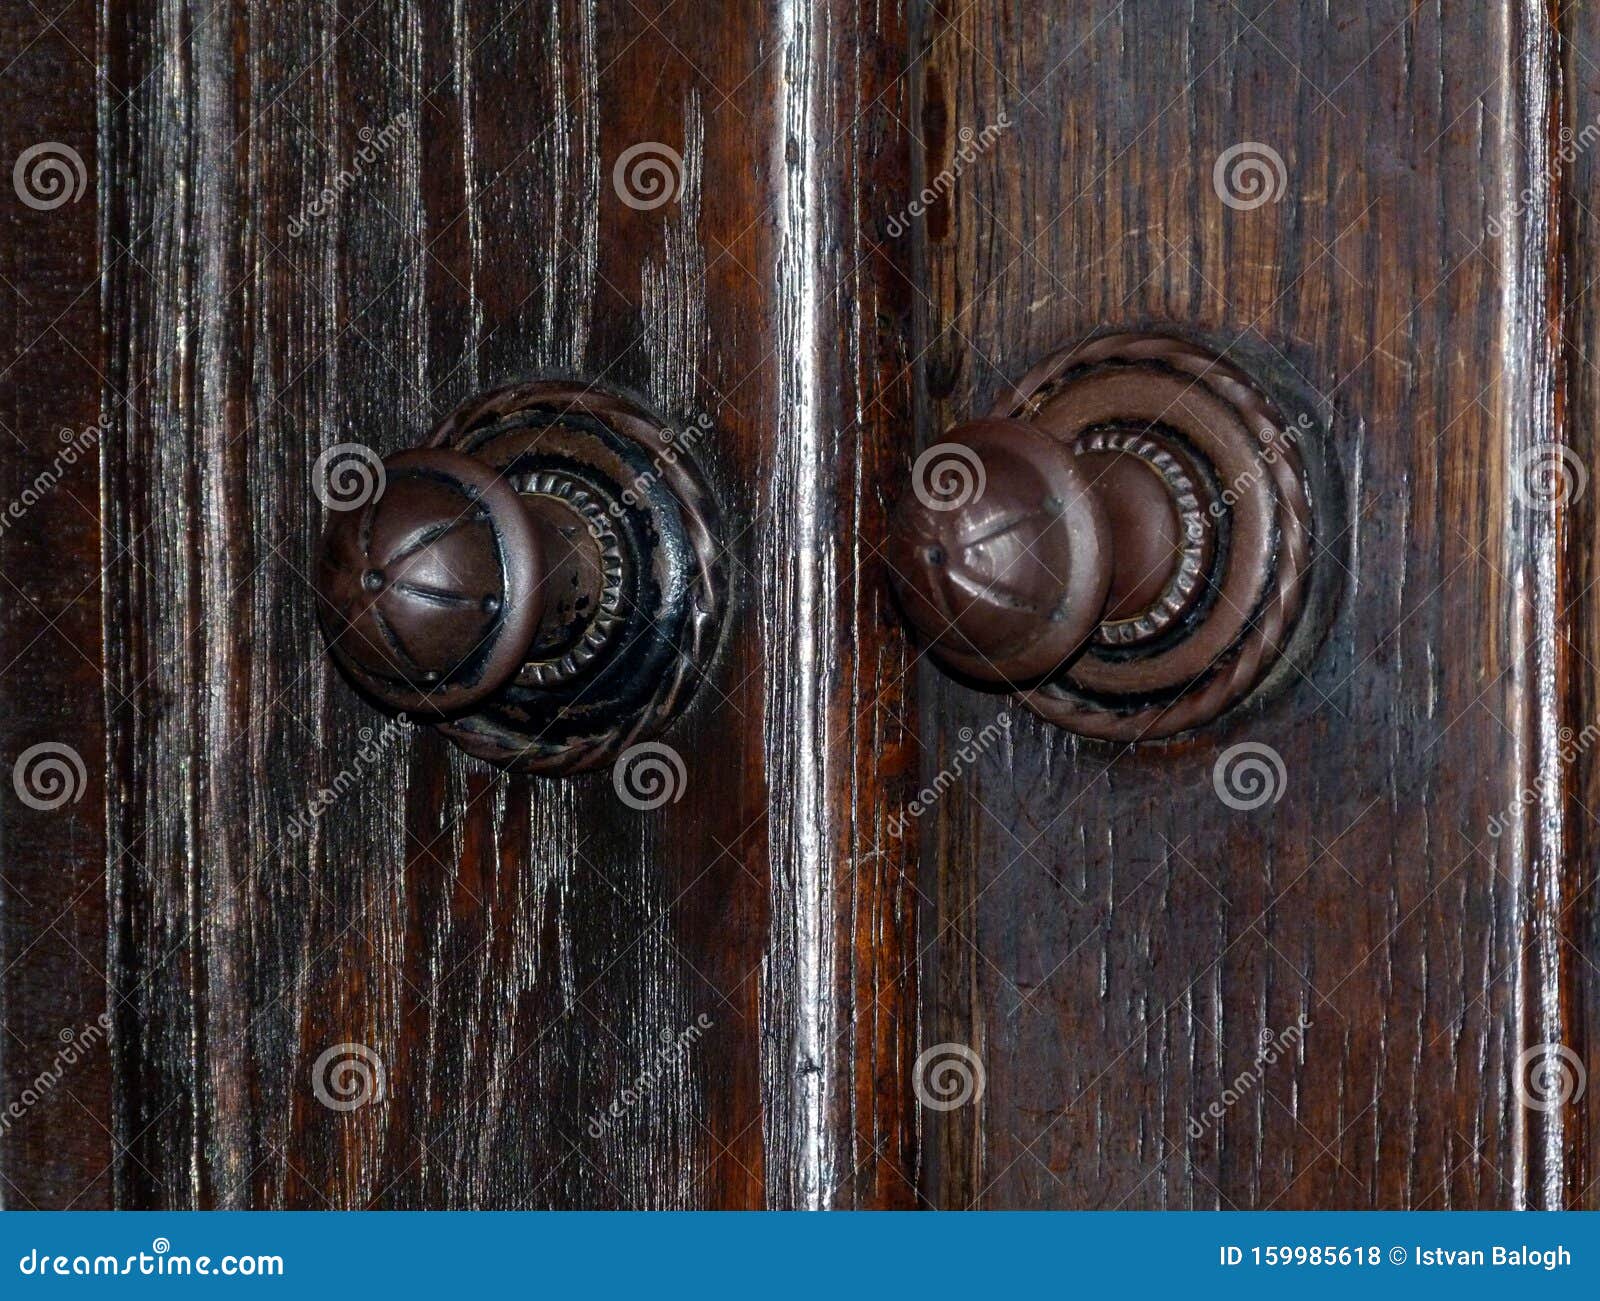 Vintage Metal Door Knob